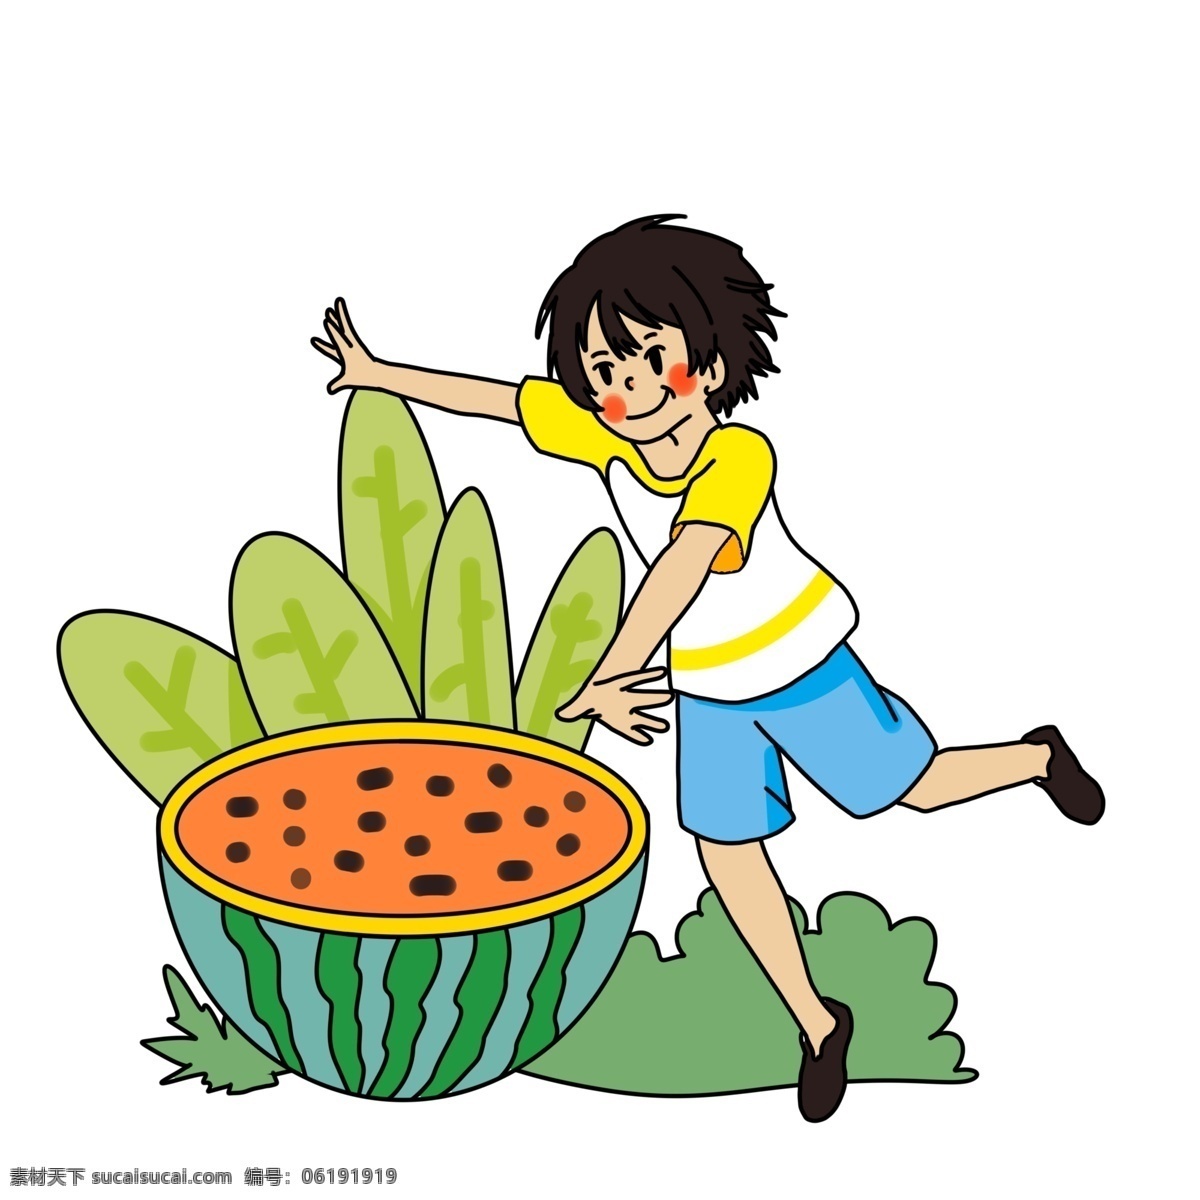 夏日 少年 开心 吃 西瓜 夏天来了 吃西瓜 人物 夏天 夏季 夏至 大暑 小孩 小暑 清爽 草丛 草地 解暑 零食